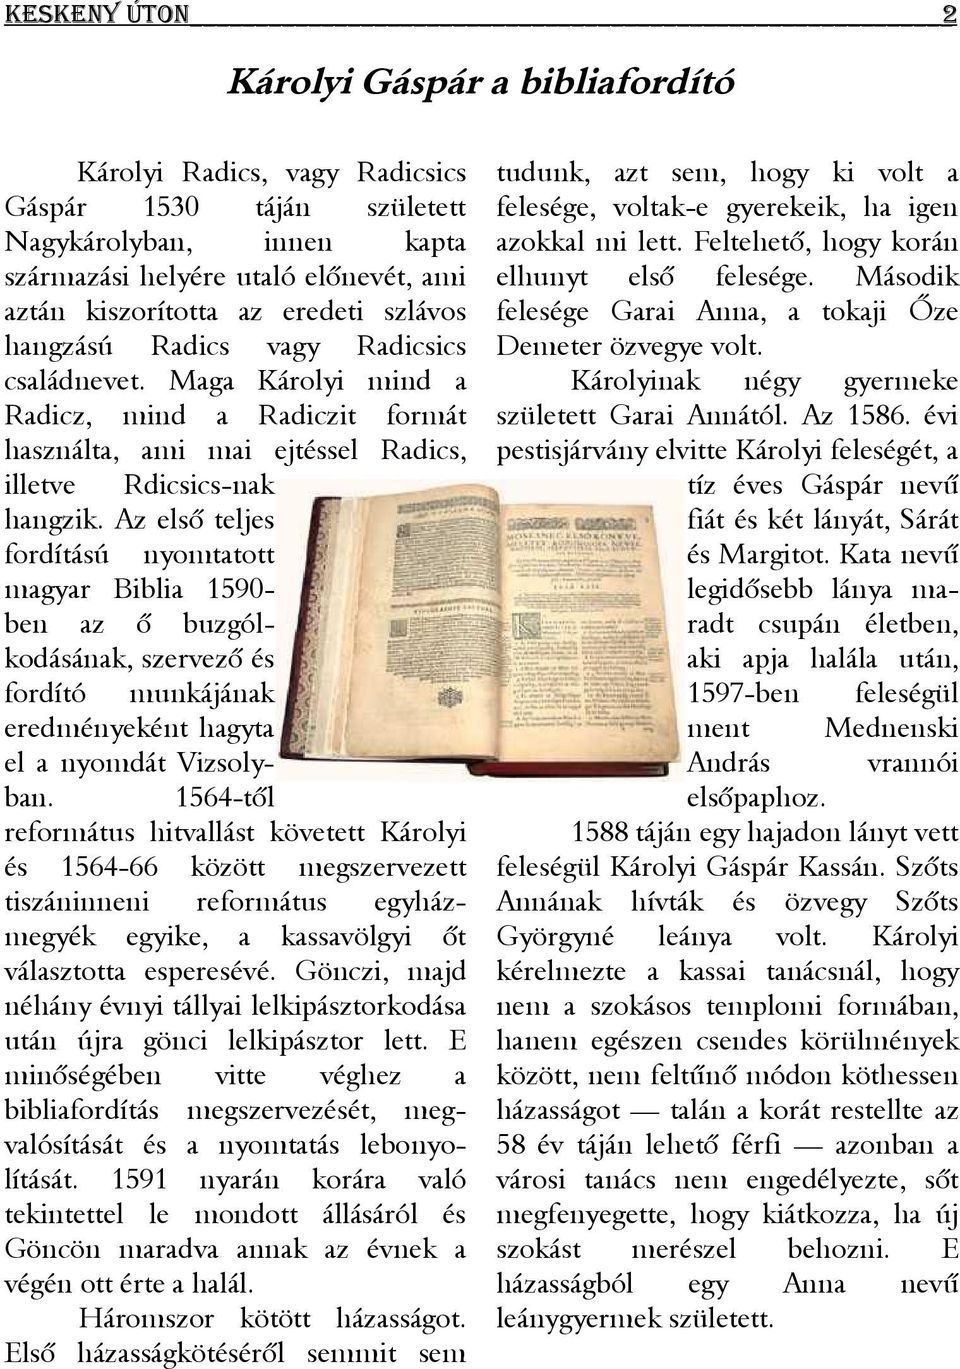 Az első teljes fordítású nyomtatott magyar Biblia 1590- ben az ő buzgólkodásának, szervező és fordító munkájának eredményeként hagyta el a nyomdát Vizsolyban.